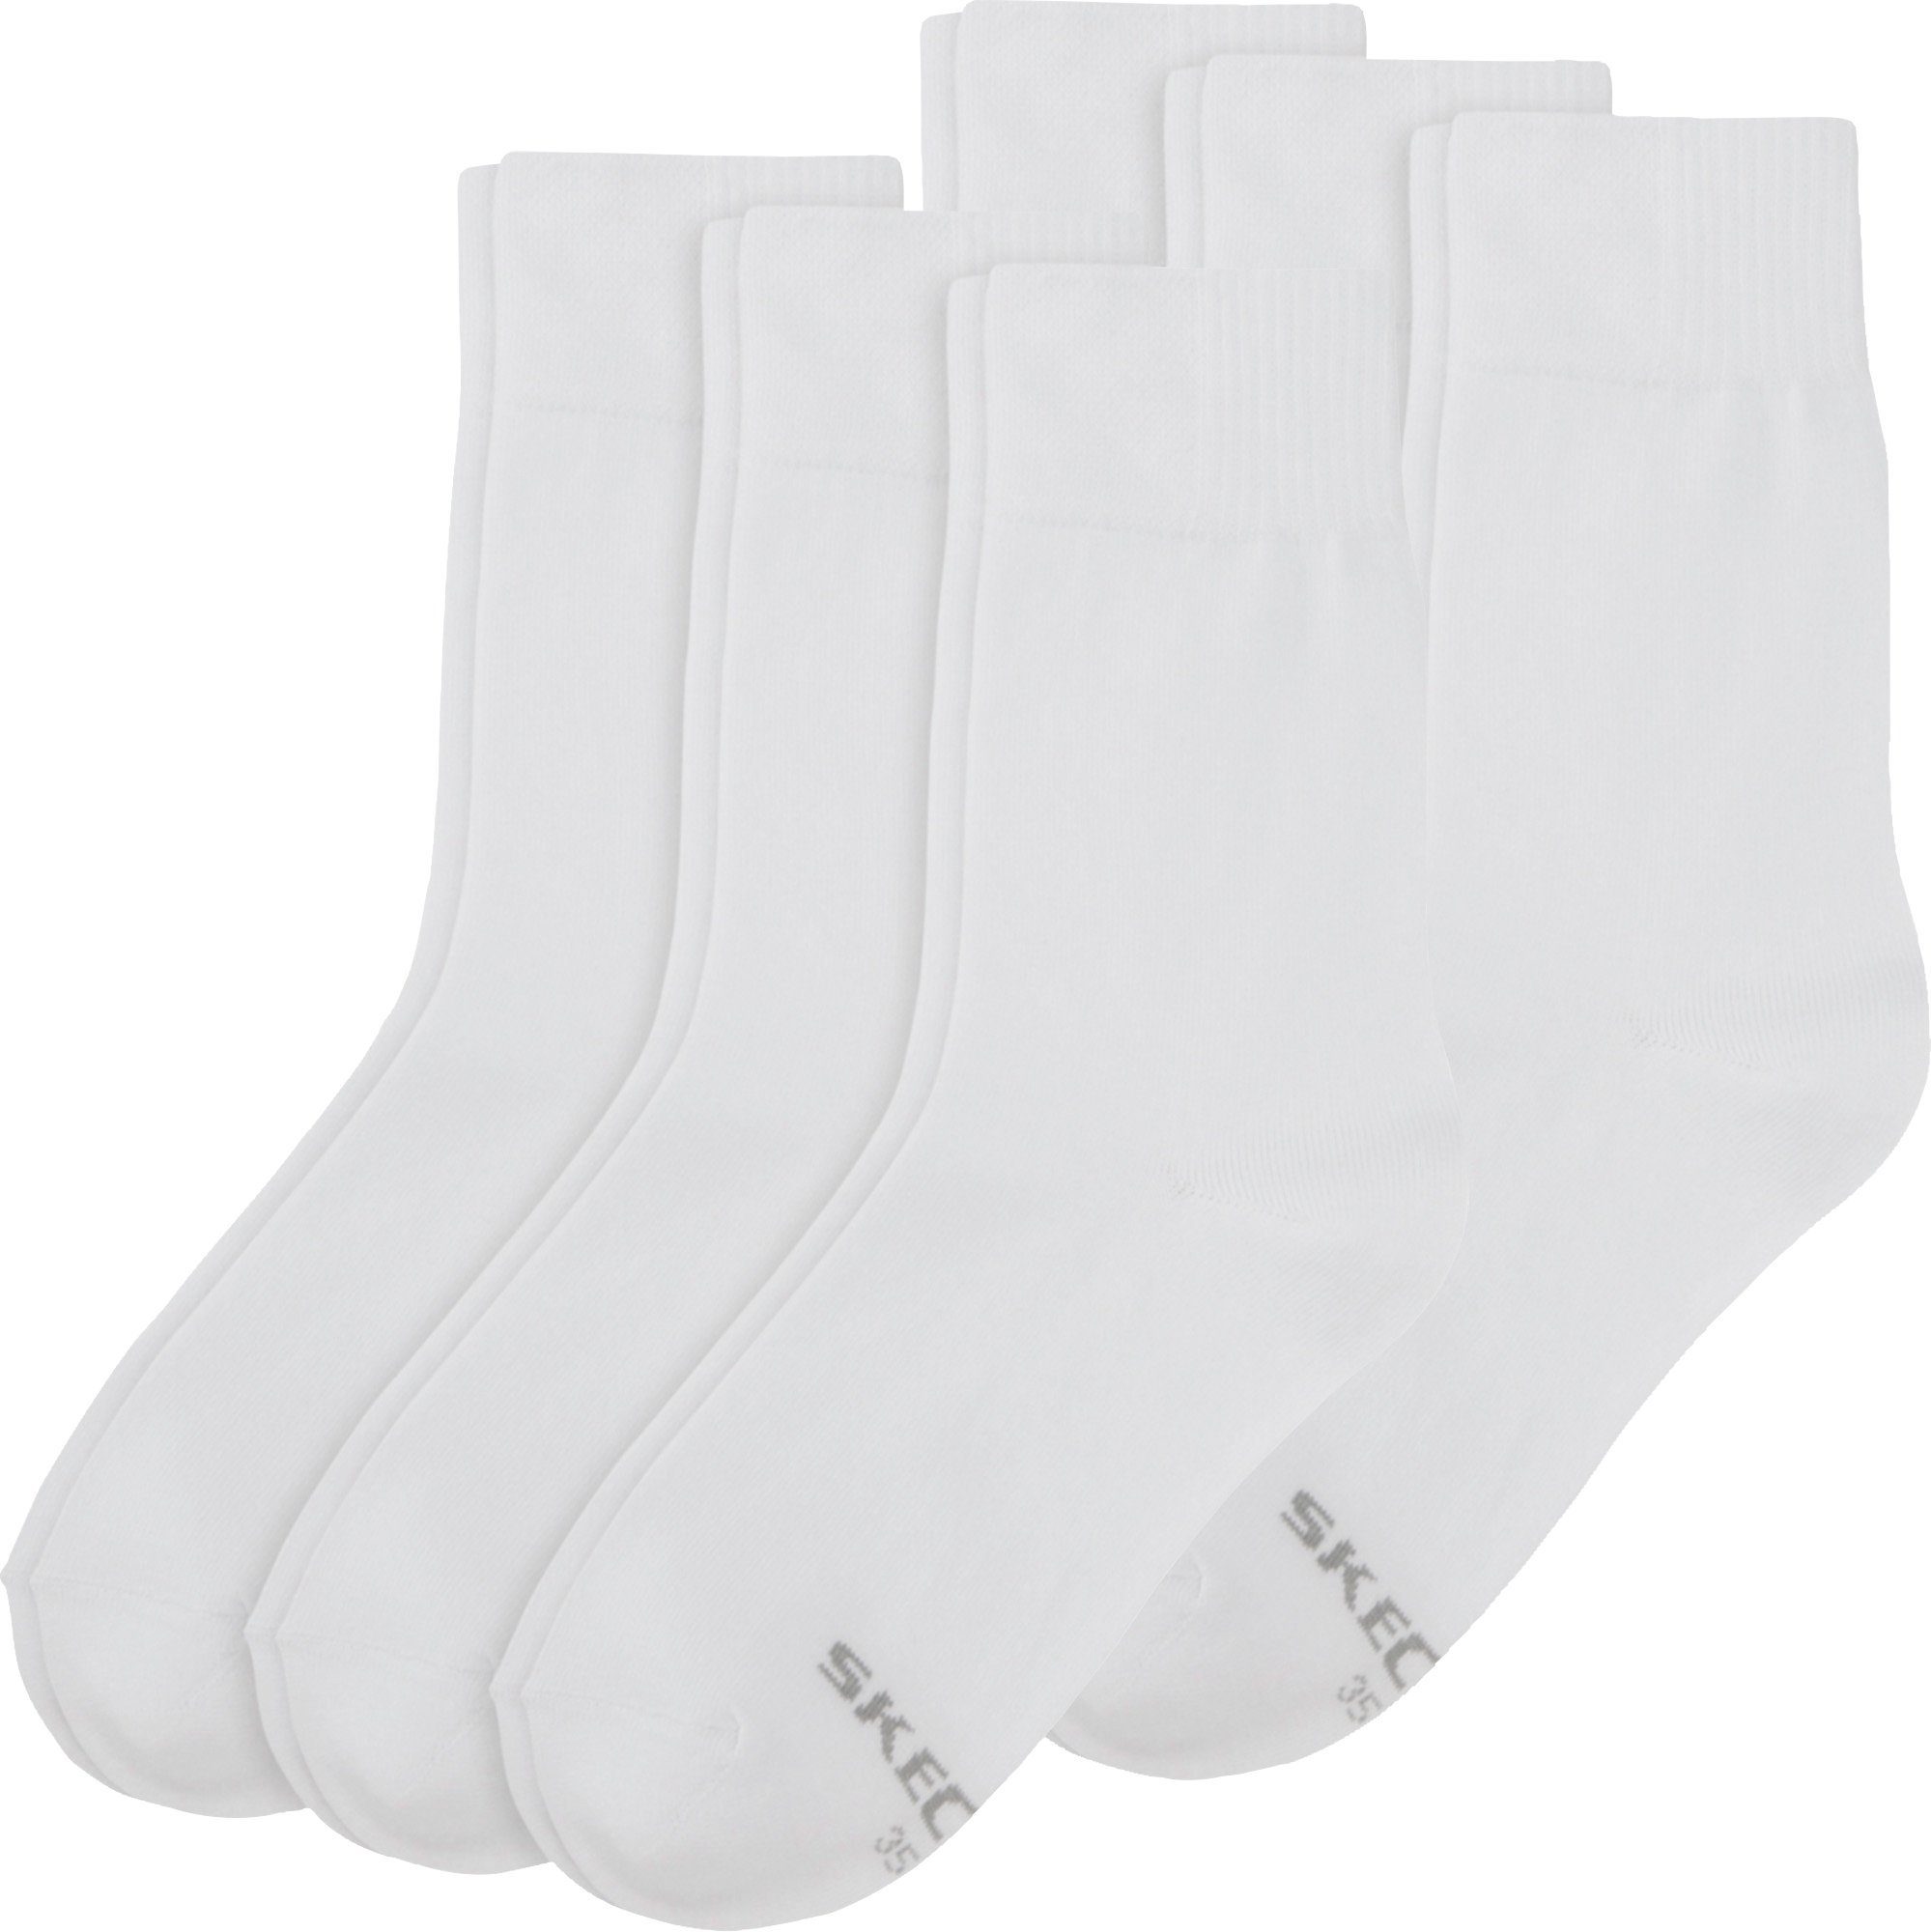 Skechers Socken Damen-Socken 6 Paar Uni weiß